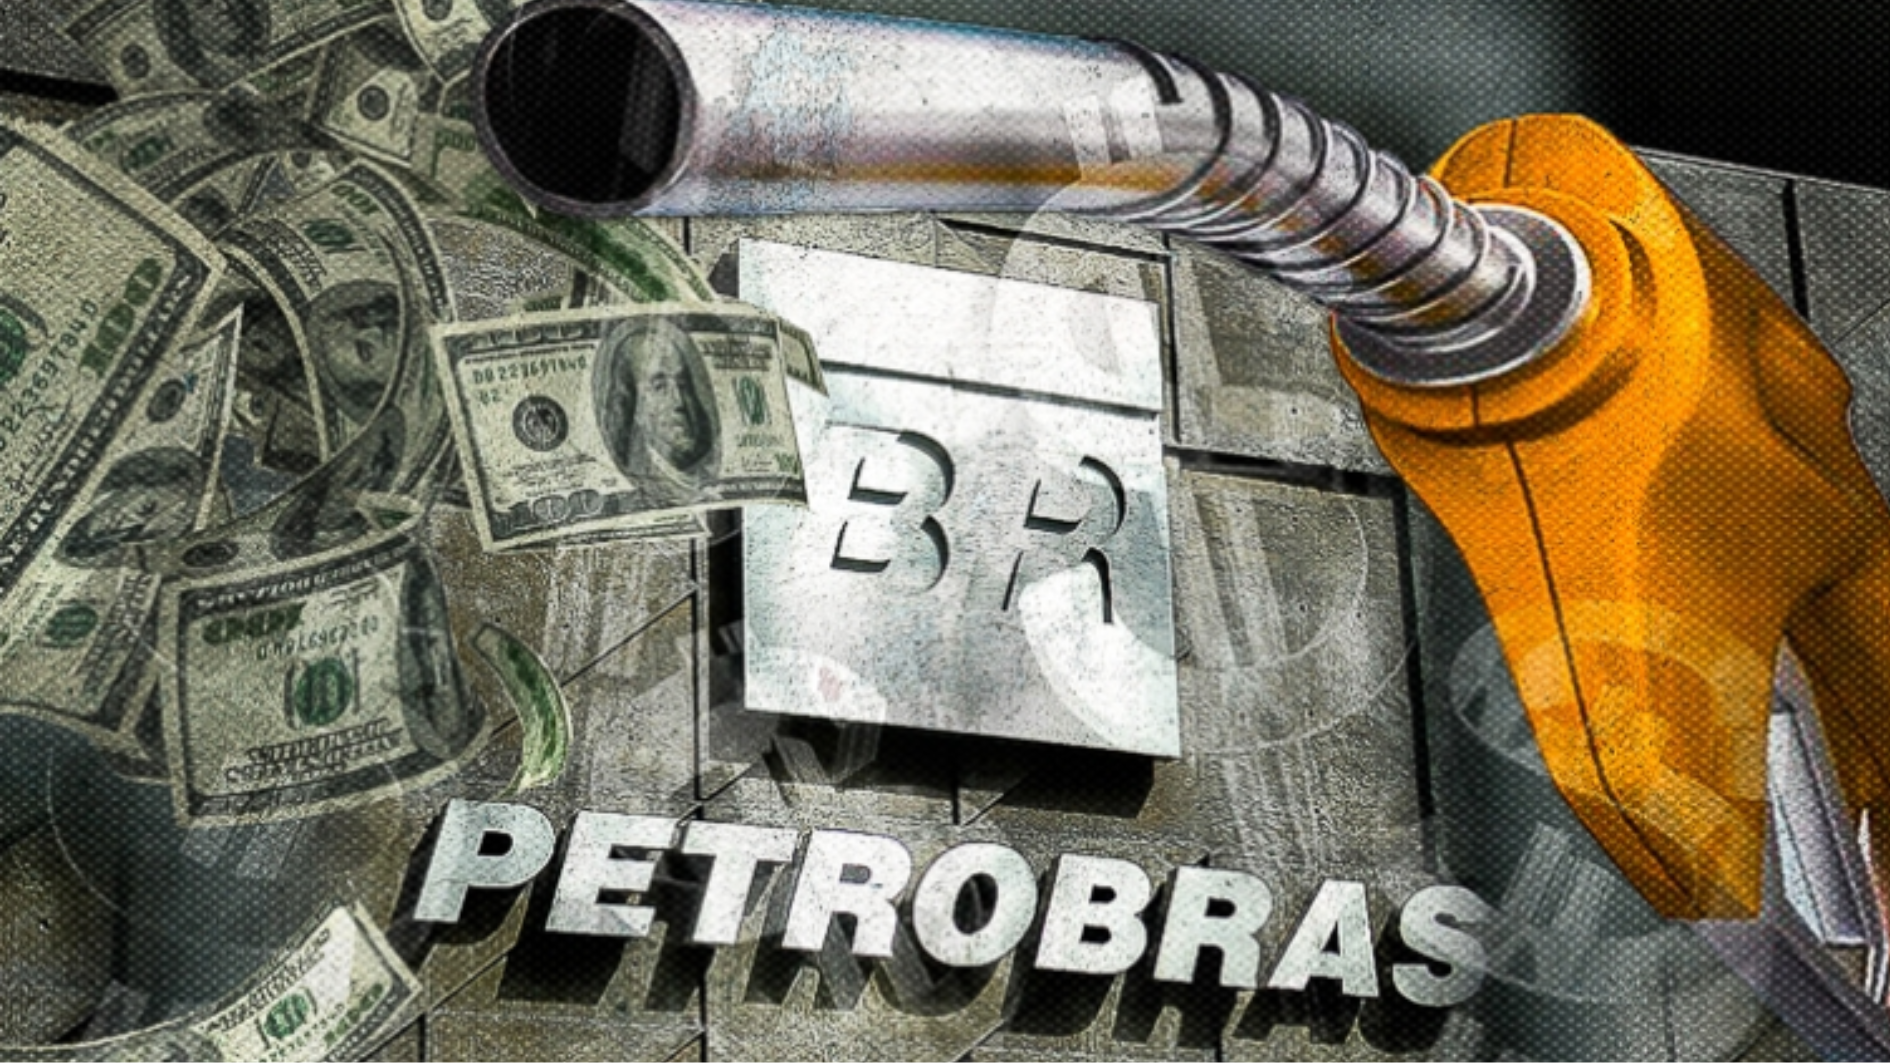 O Governo Bolsonaro vem realizando um verdadeiro desmonte dos ativos da Petrobras no Brasil ao longo dos últimos anos. A aceleração da privatização da empresa vem causando sérios problemas de dependência de importação e aumento nos preços dos combustíveis.